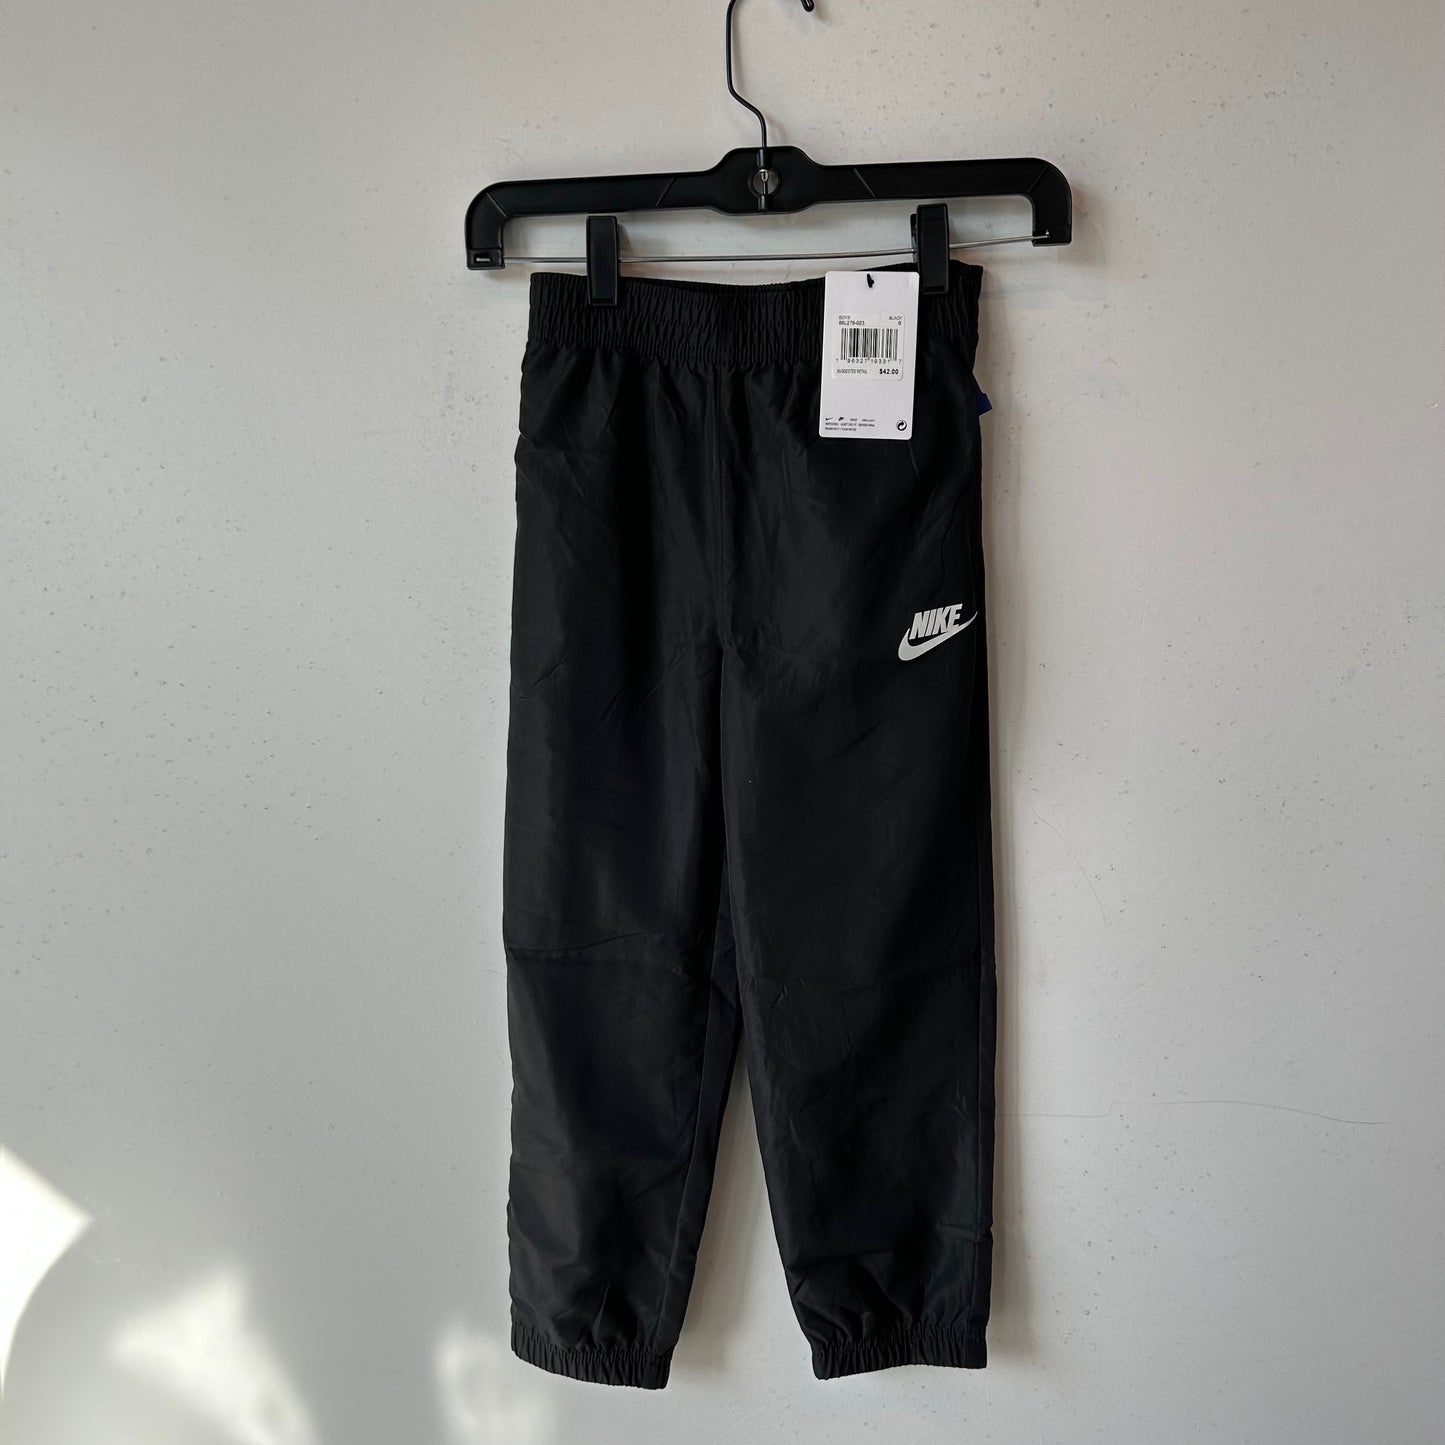 6 Boy's Black Nike Sweatpants